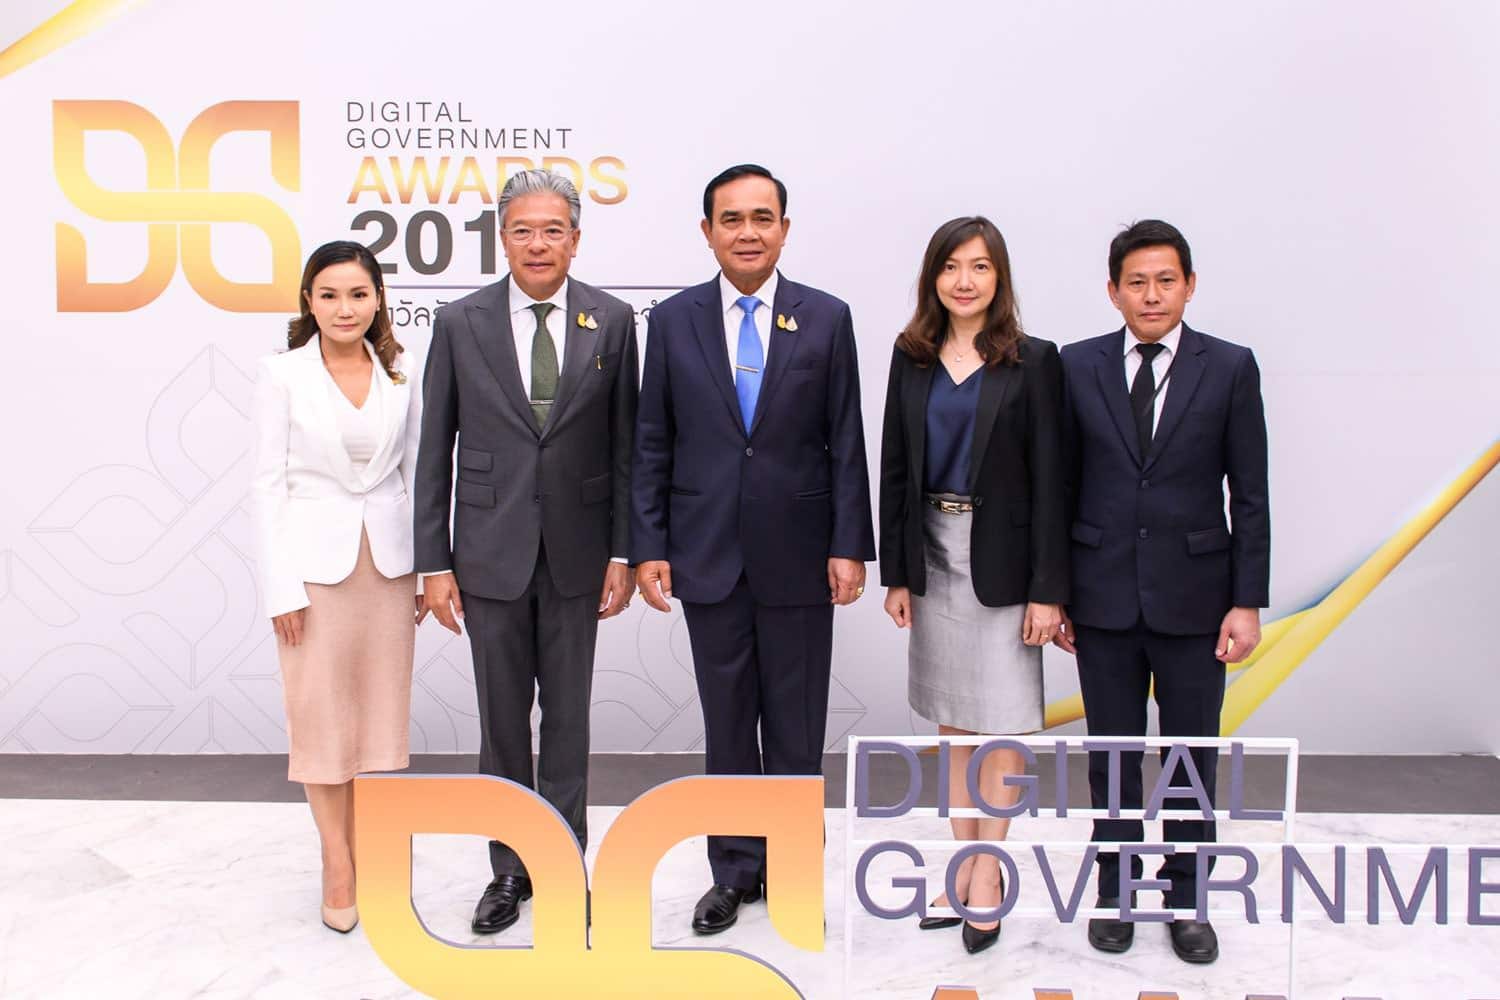 นายกรัฐมนตรีมอบรางวัล “Digital Government Awards 2019 ณ ทำเนียบรัฐบาล 1